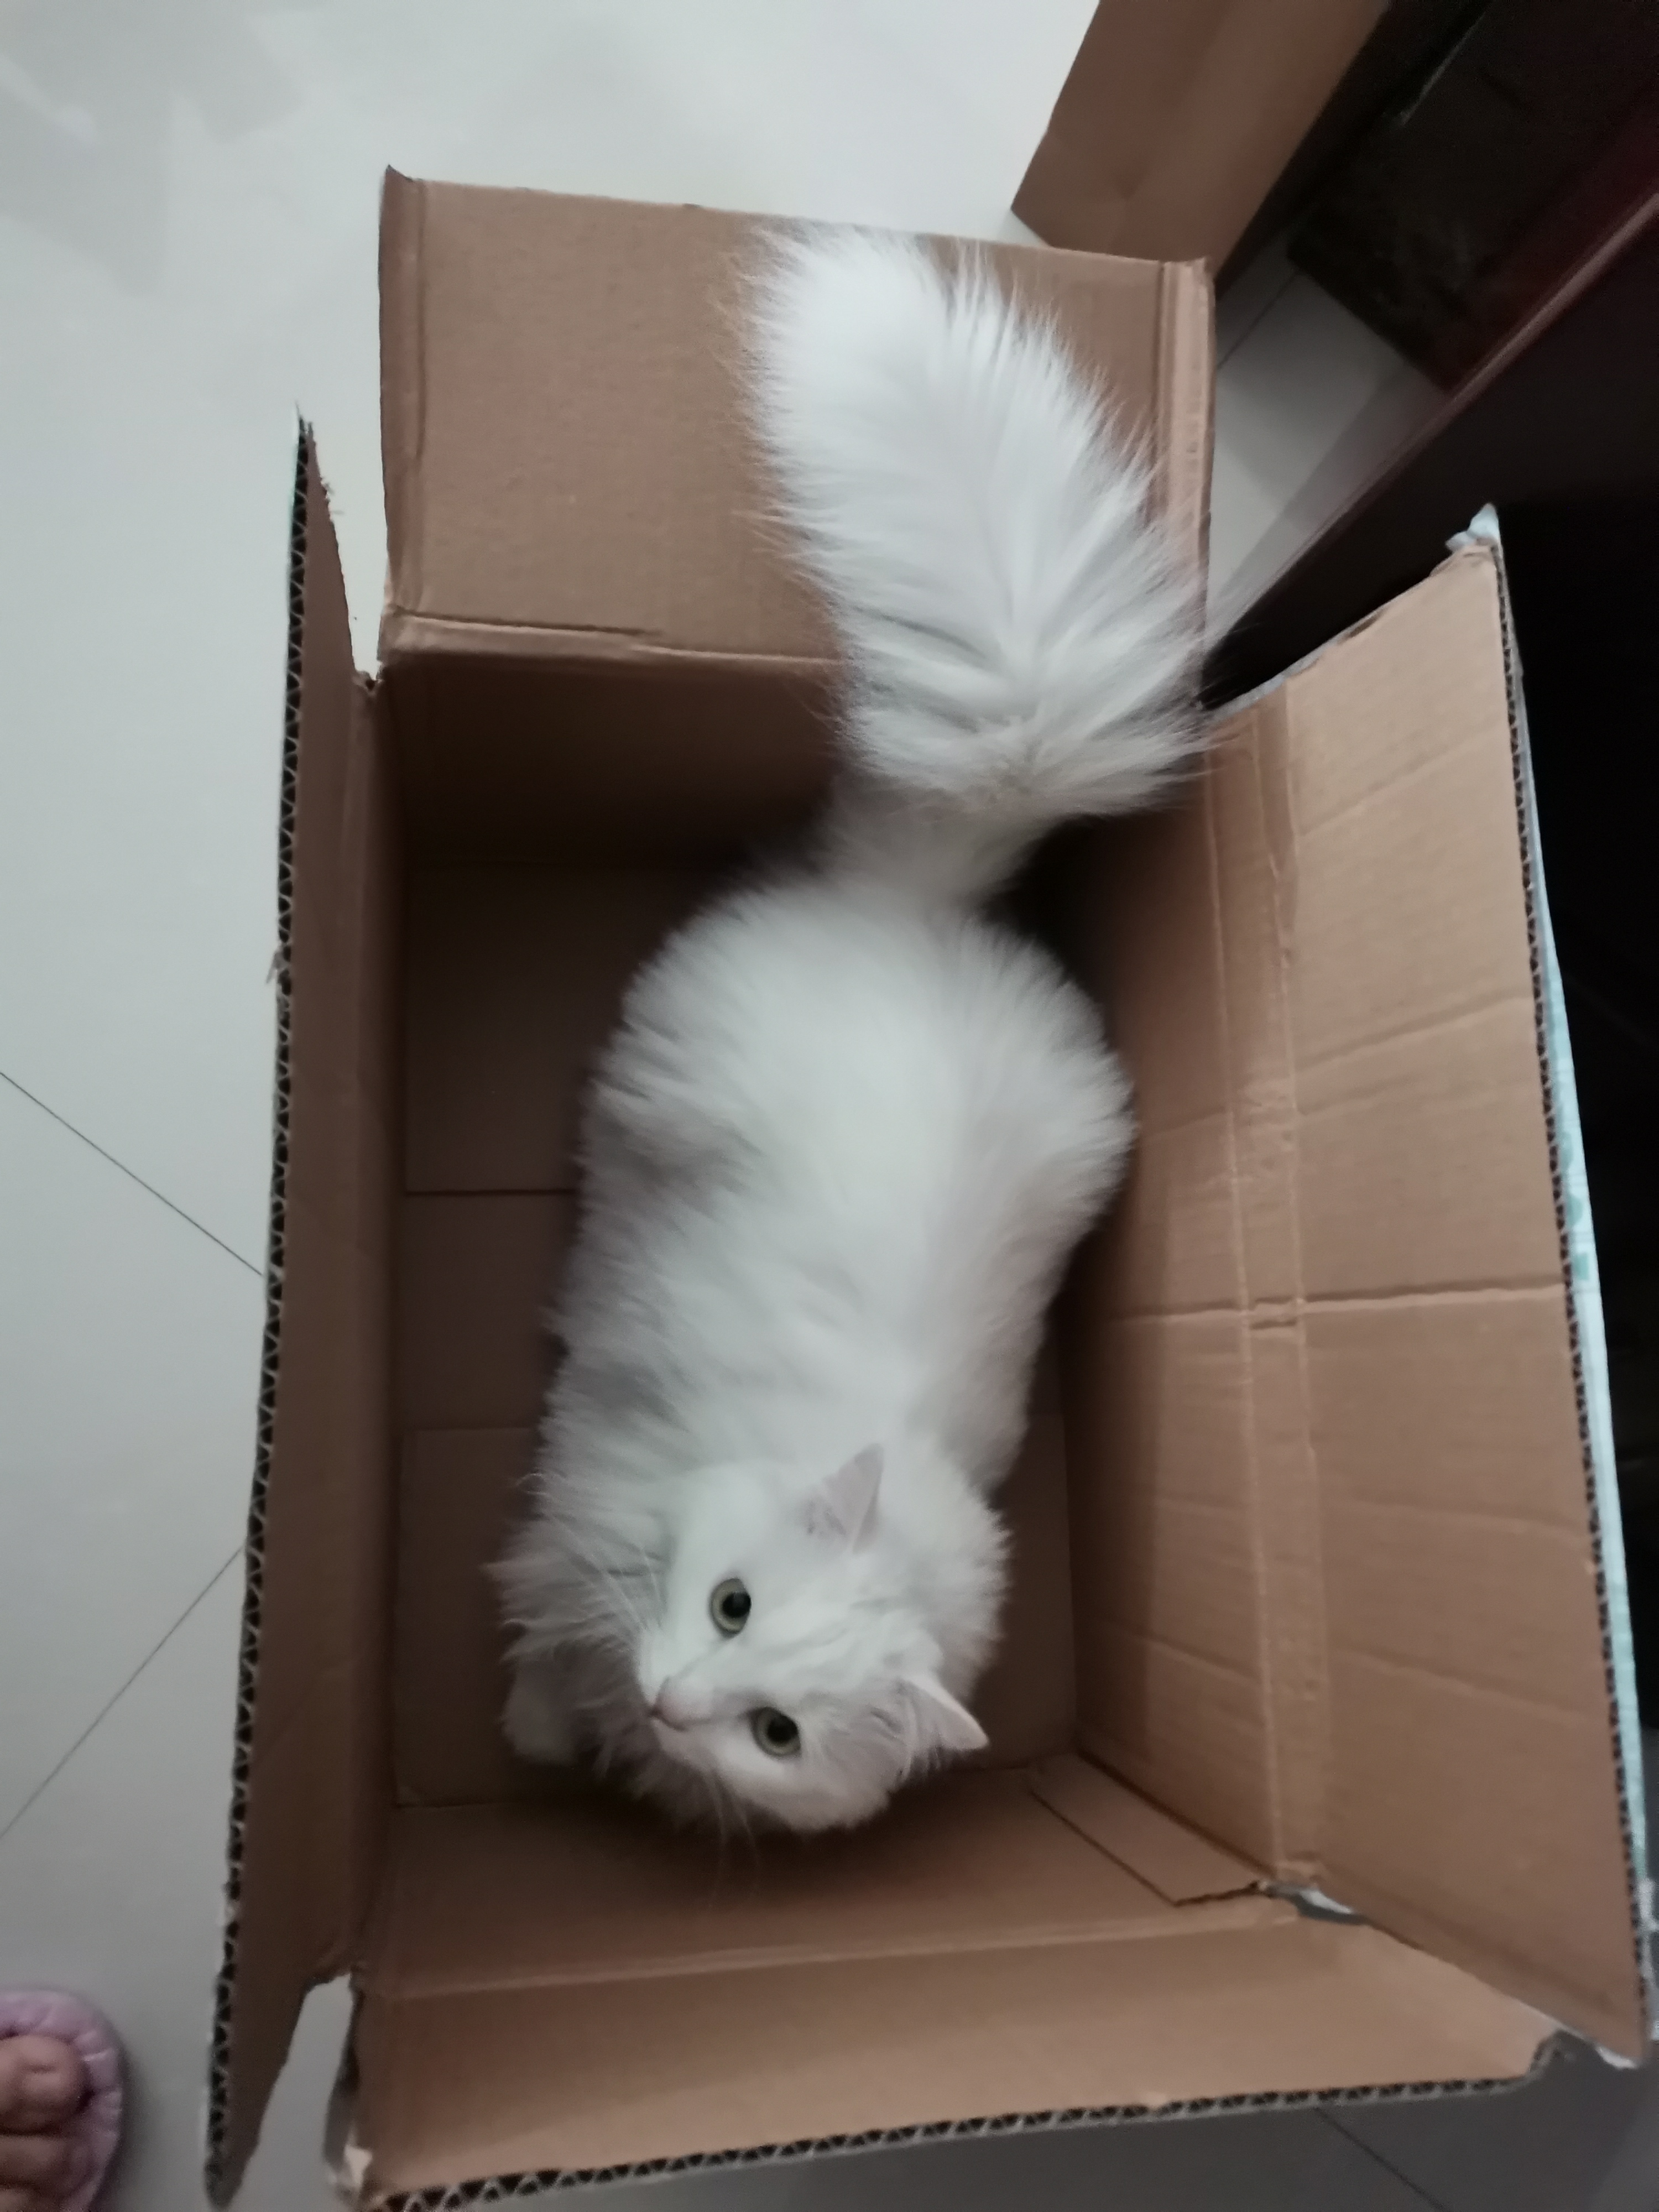 纸箱放久了会长出猫,箱子里会长出猫来,盒子放久了会长出猫,纸盒里会长出猫,猫